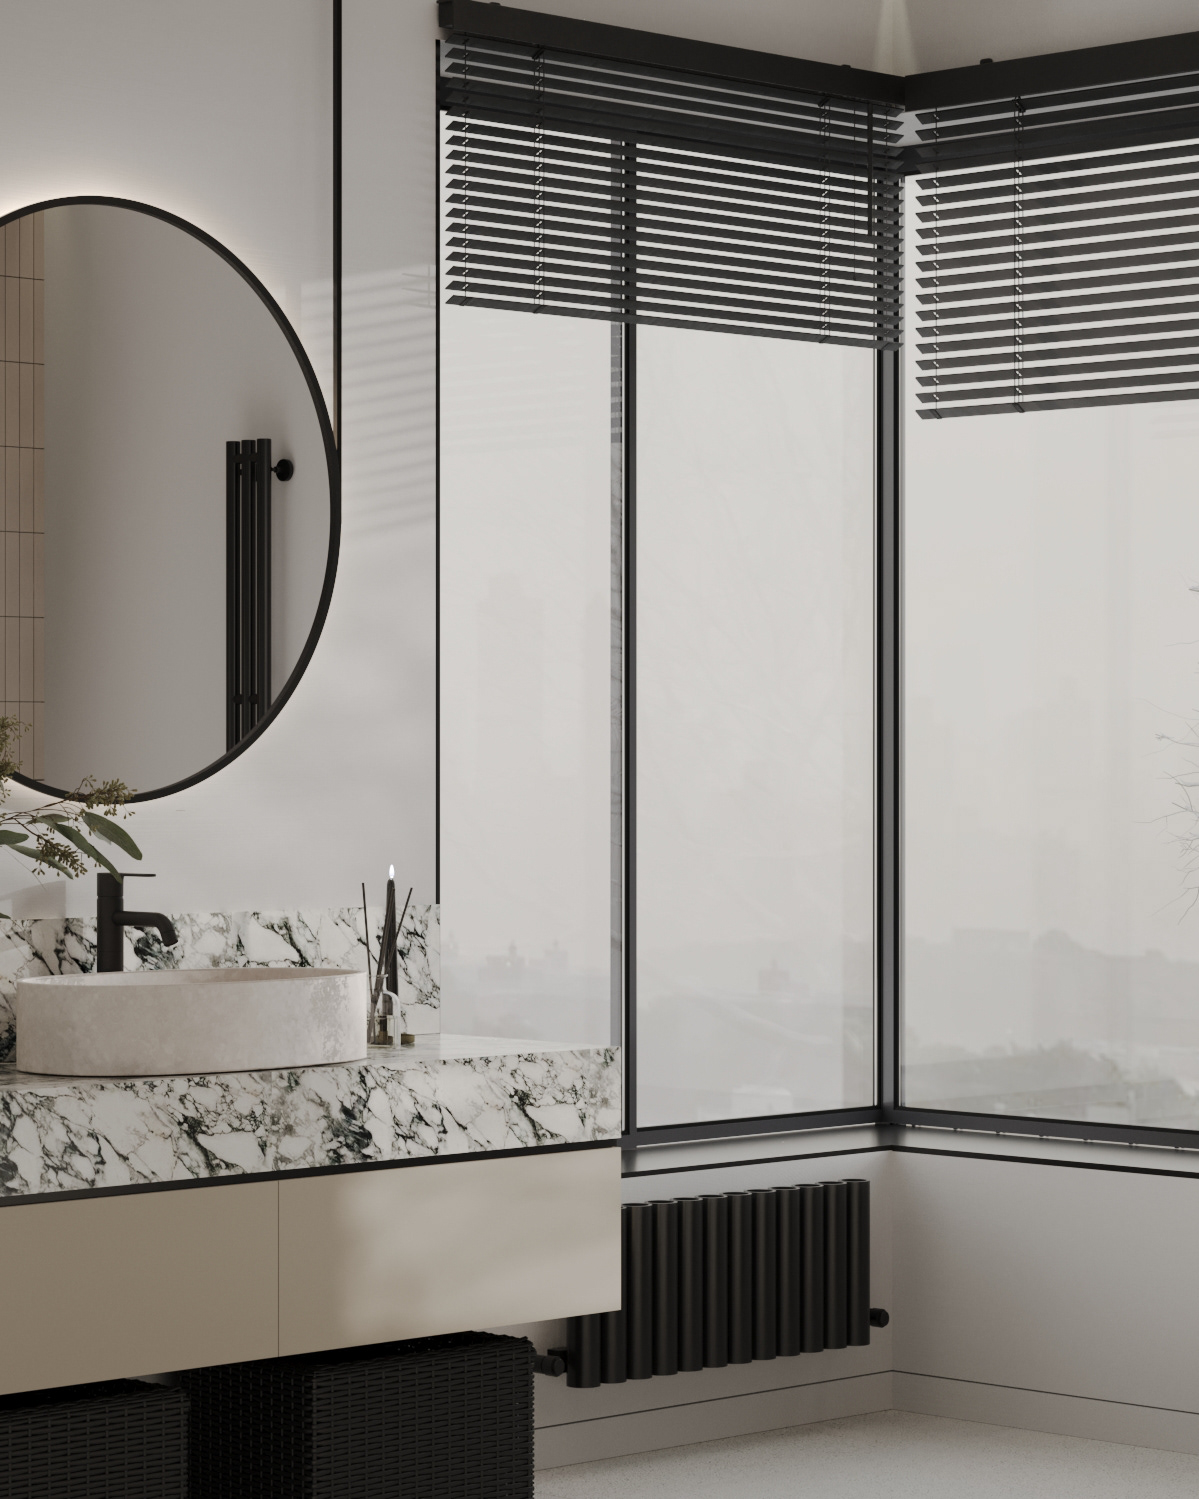 bathroom interior design  visualization 3ds max интерьер дизайн интерьера IDEA INTERIOR Визуализация интерьера Детская ванная современный дизайн